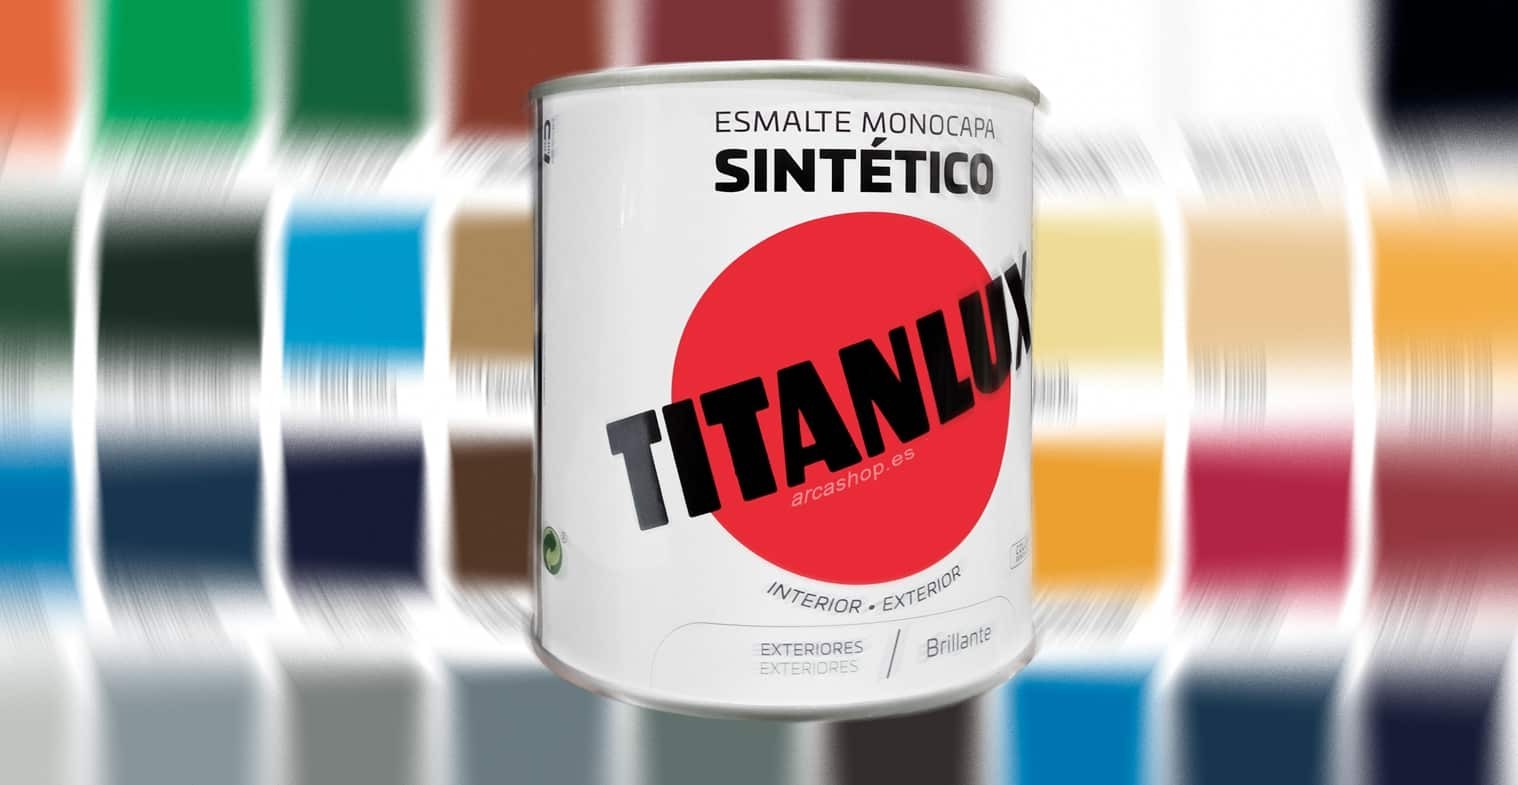 Esmalte Sintetico Titanlux Monocapa, el nuevo esmalte sintético Titanlux de AkzoNobel 